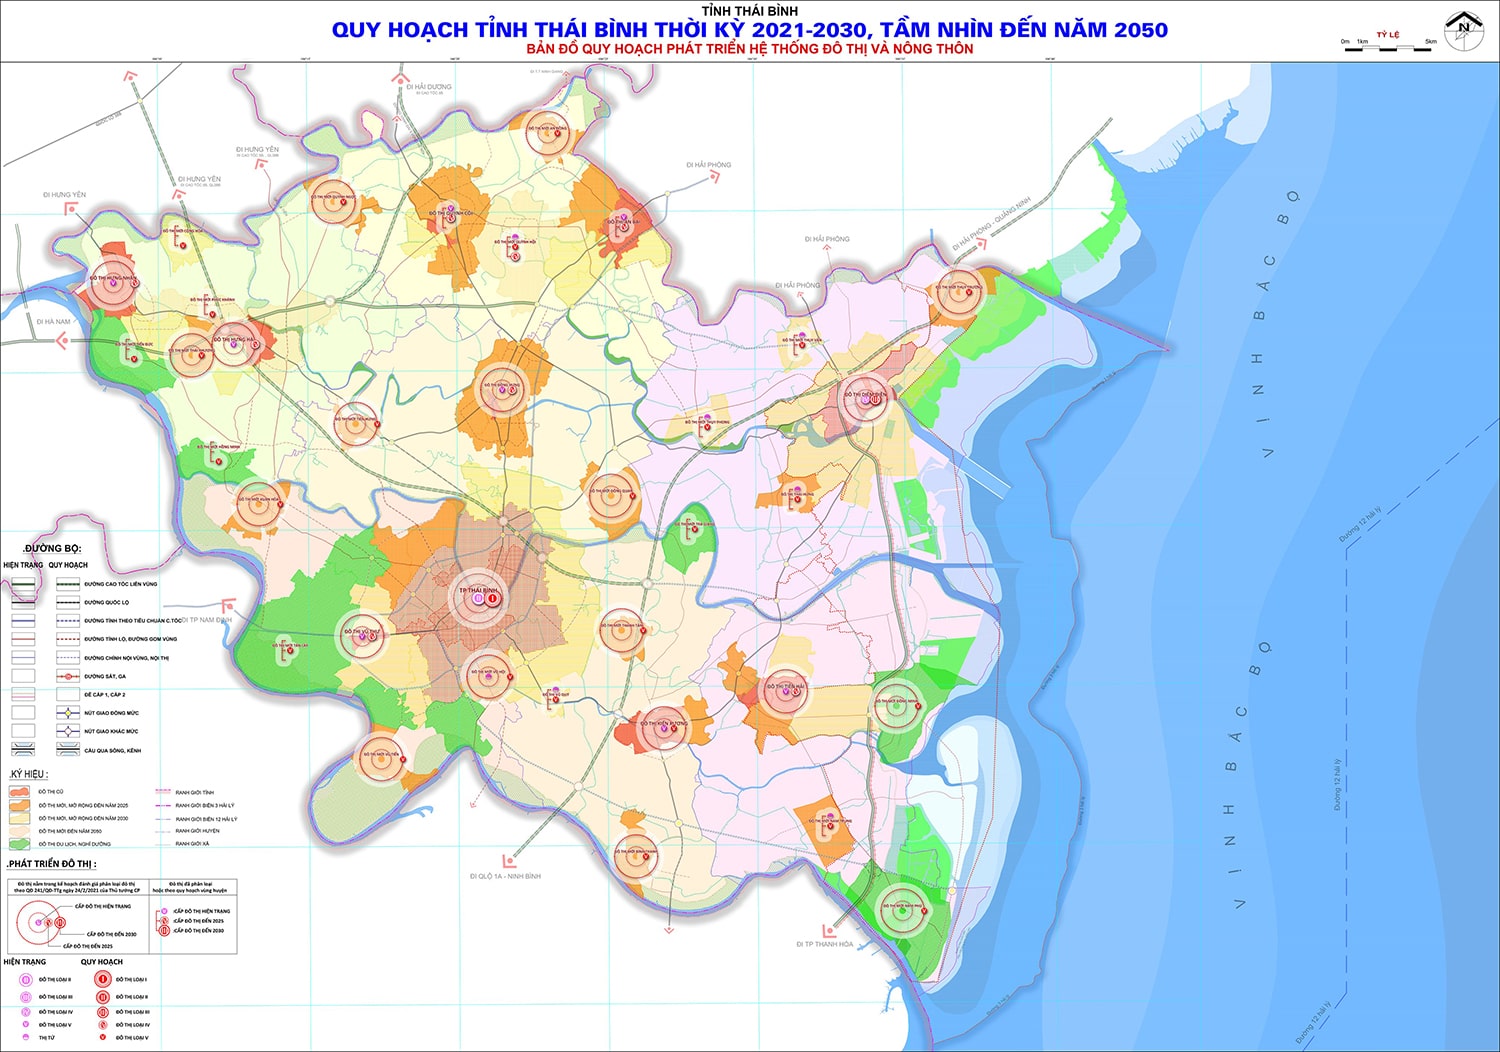 Thông tin quy hoạch phát triển hệ thống đô thị tỉnh Thái Bình đến năm 2030, tầm nhìn năm 2050